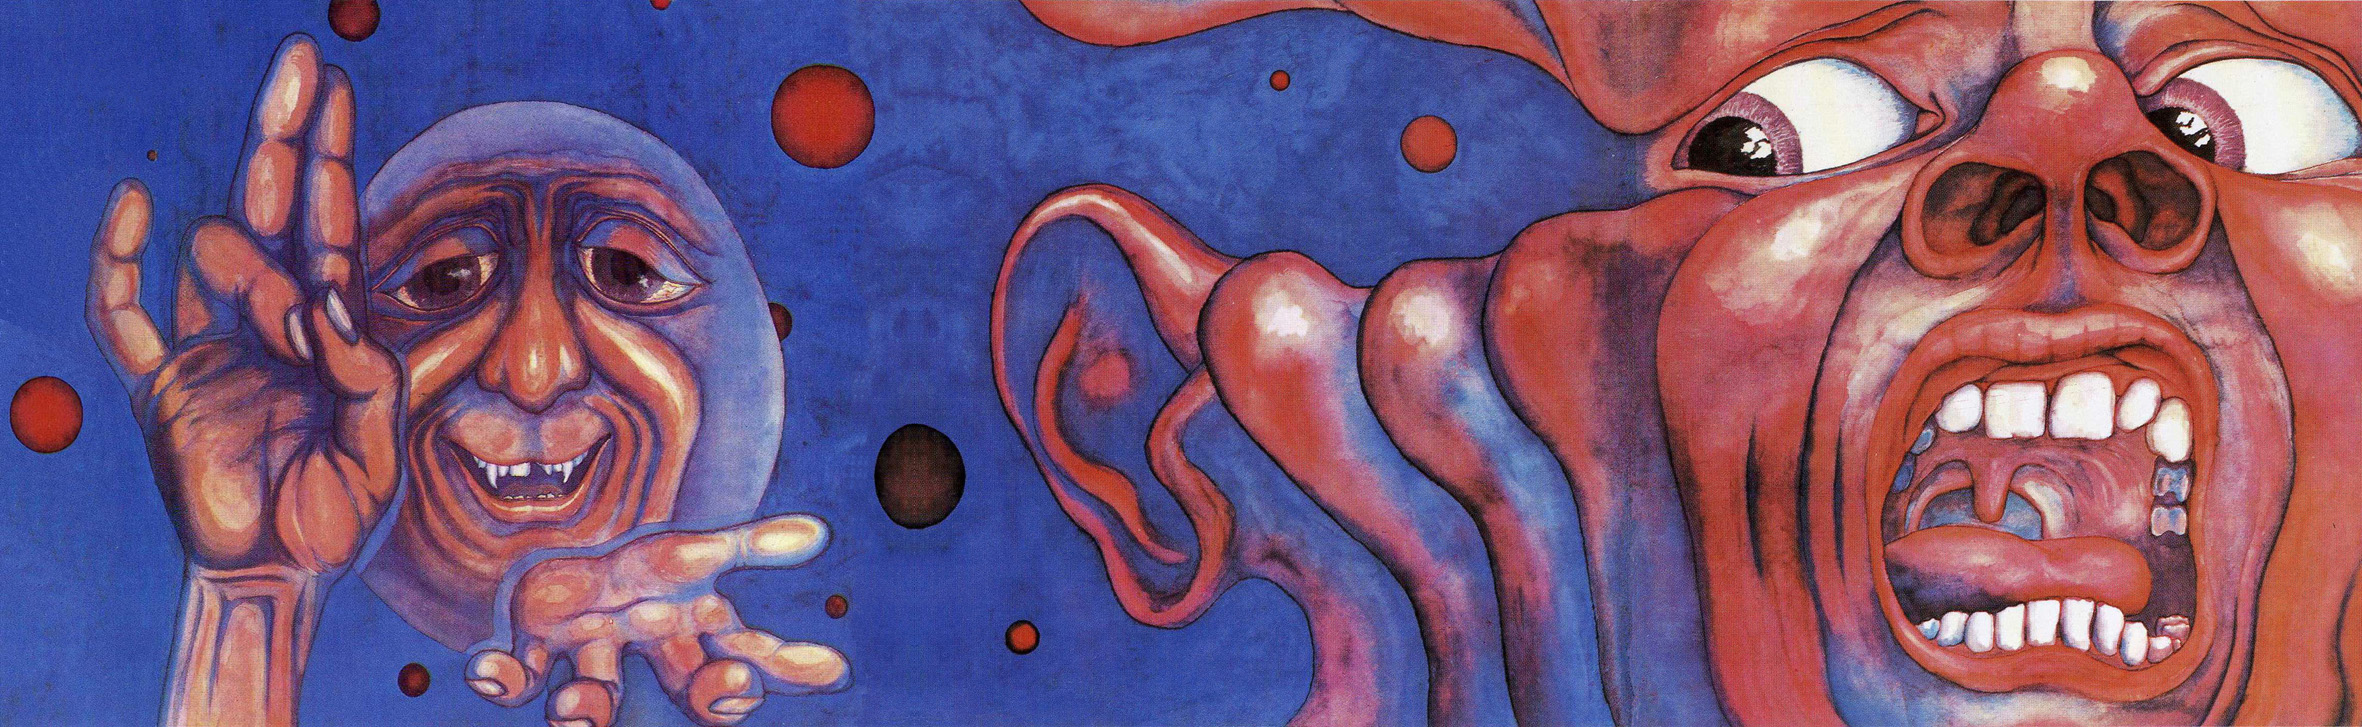 King Crimson Backgrounds, Compatible - PC, Mobile, Gadgets| 2362x727 px